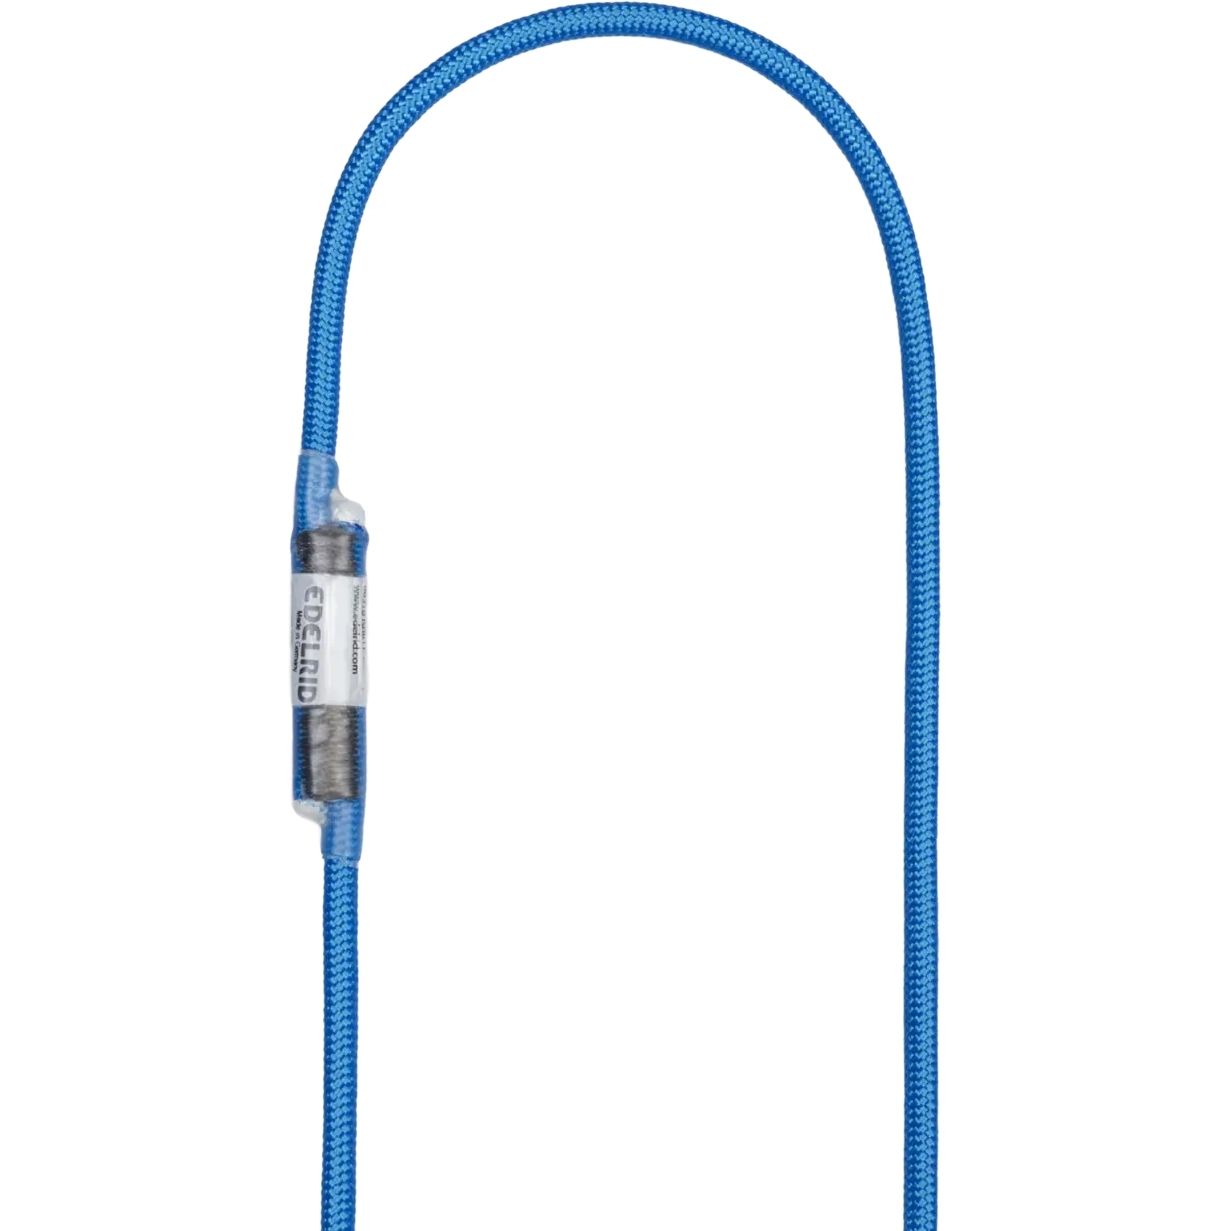 Produktbild von Edelrid HMPE Cord Sling 6 mm Schlinge - 120 cm - blau